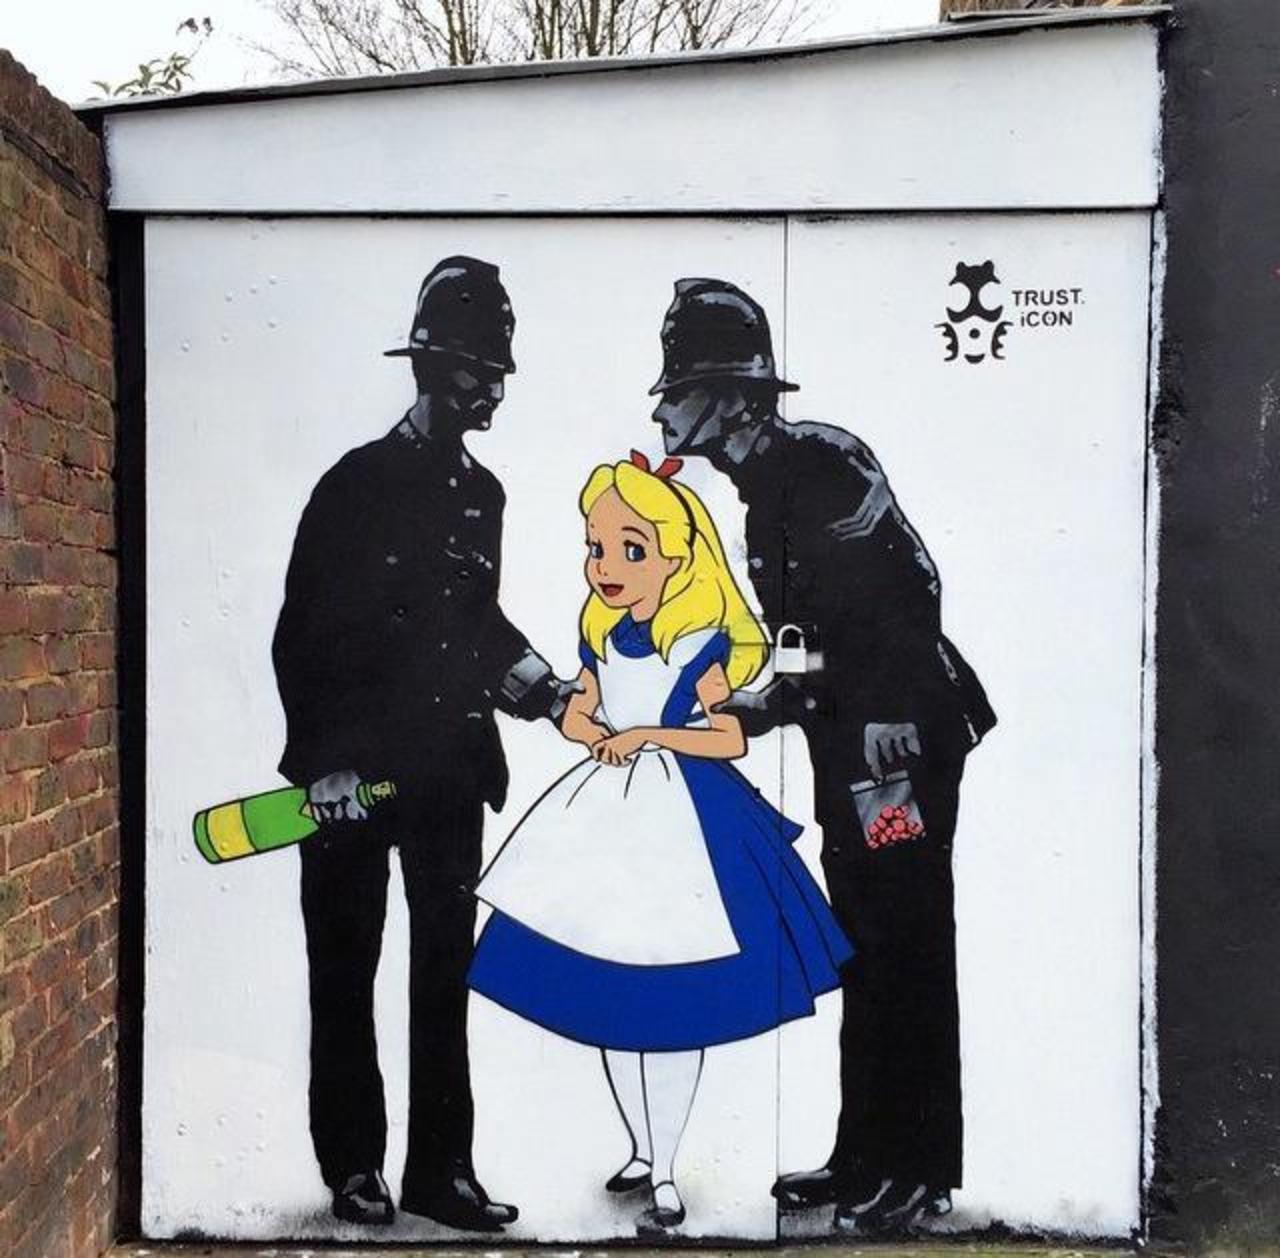 New Street Art by iCON in Camden, London 

#art #arte #graffiti #streetart http://t.co/y7NIFDsTJN